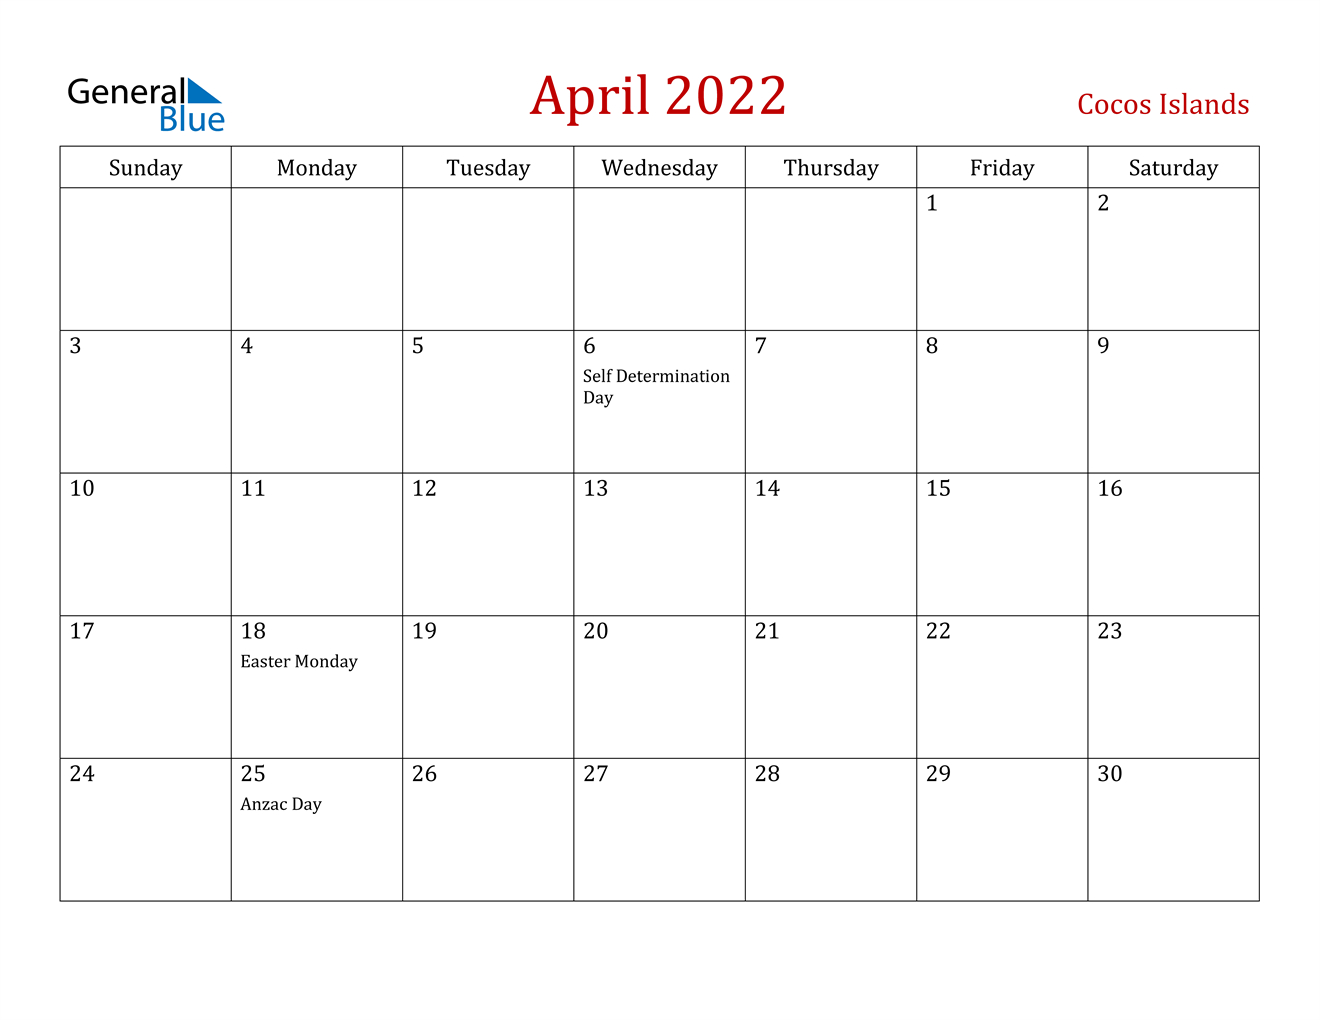 April 2022 Calendar - Cocos Islands